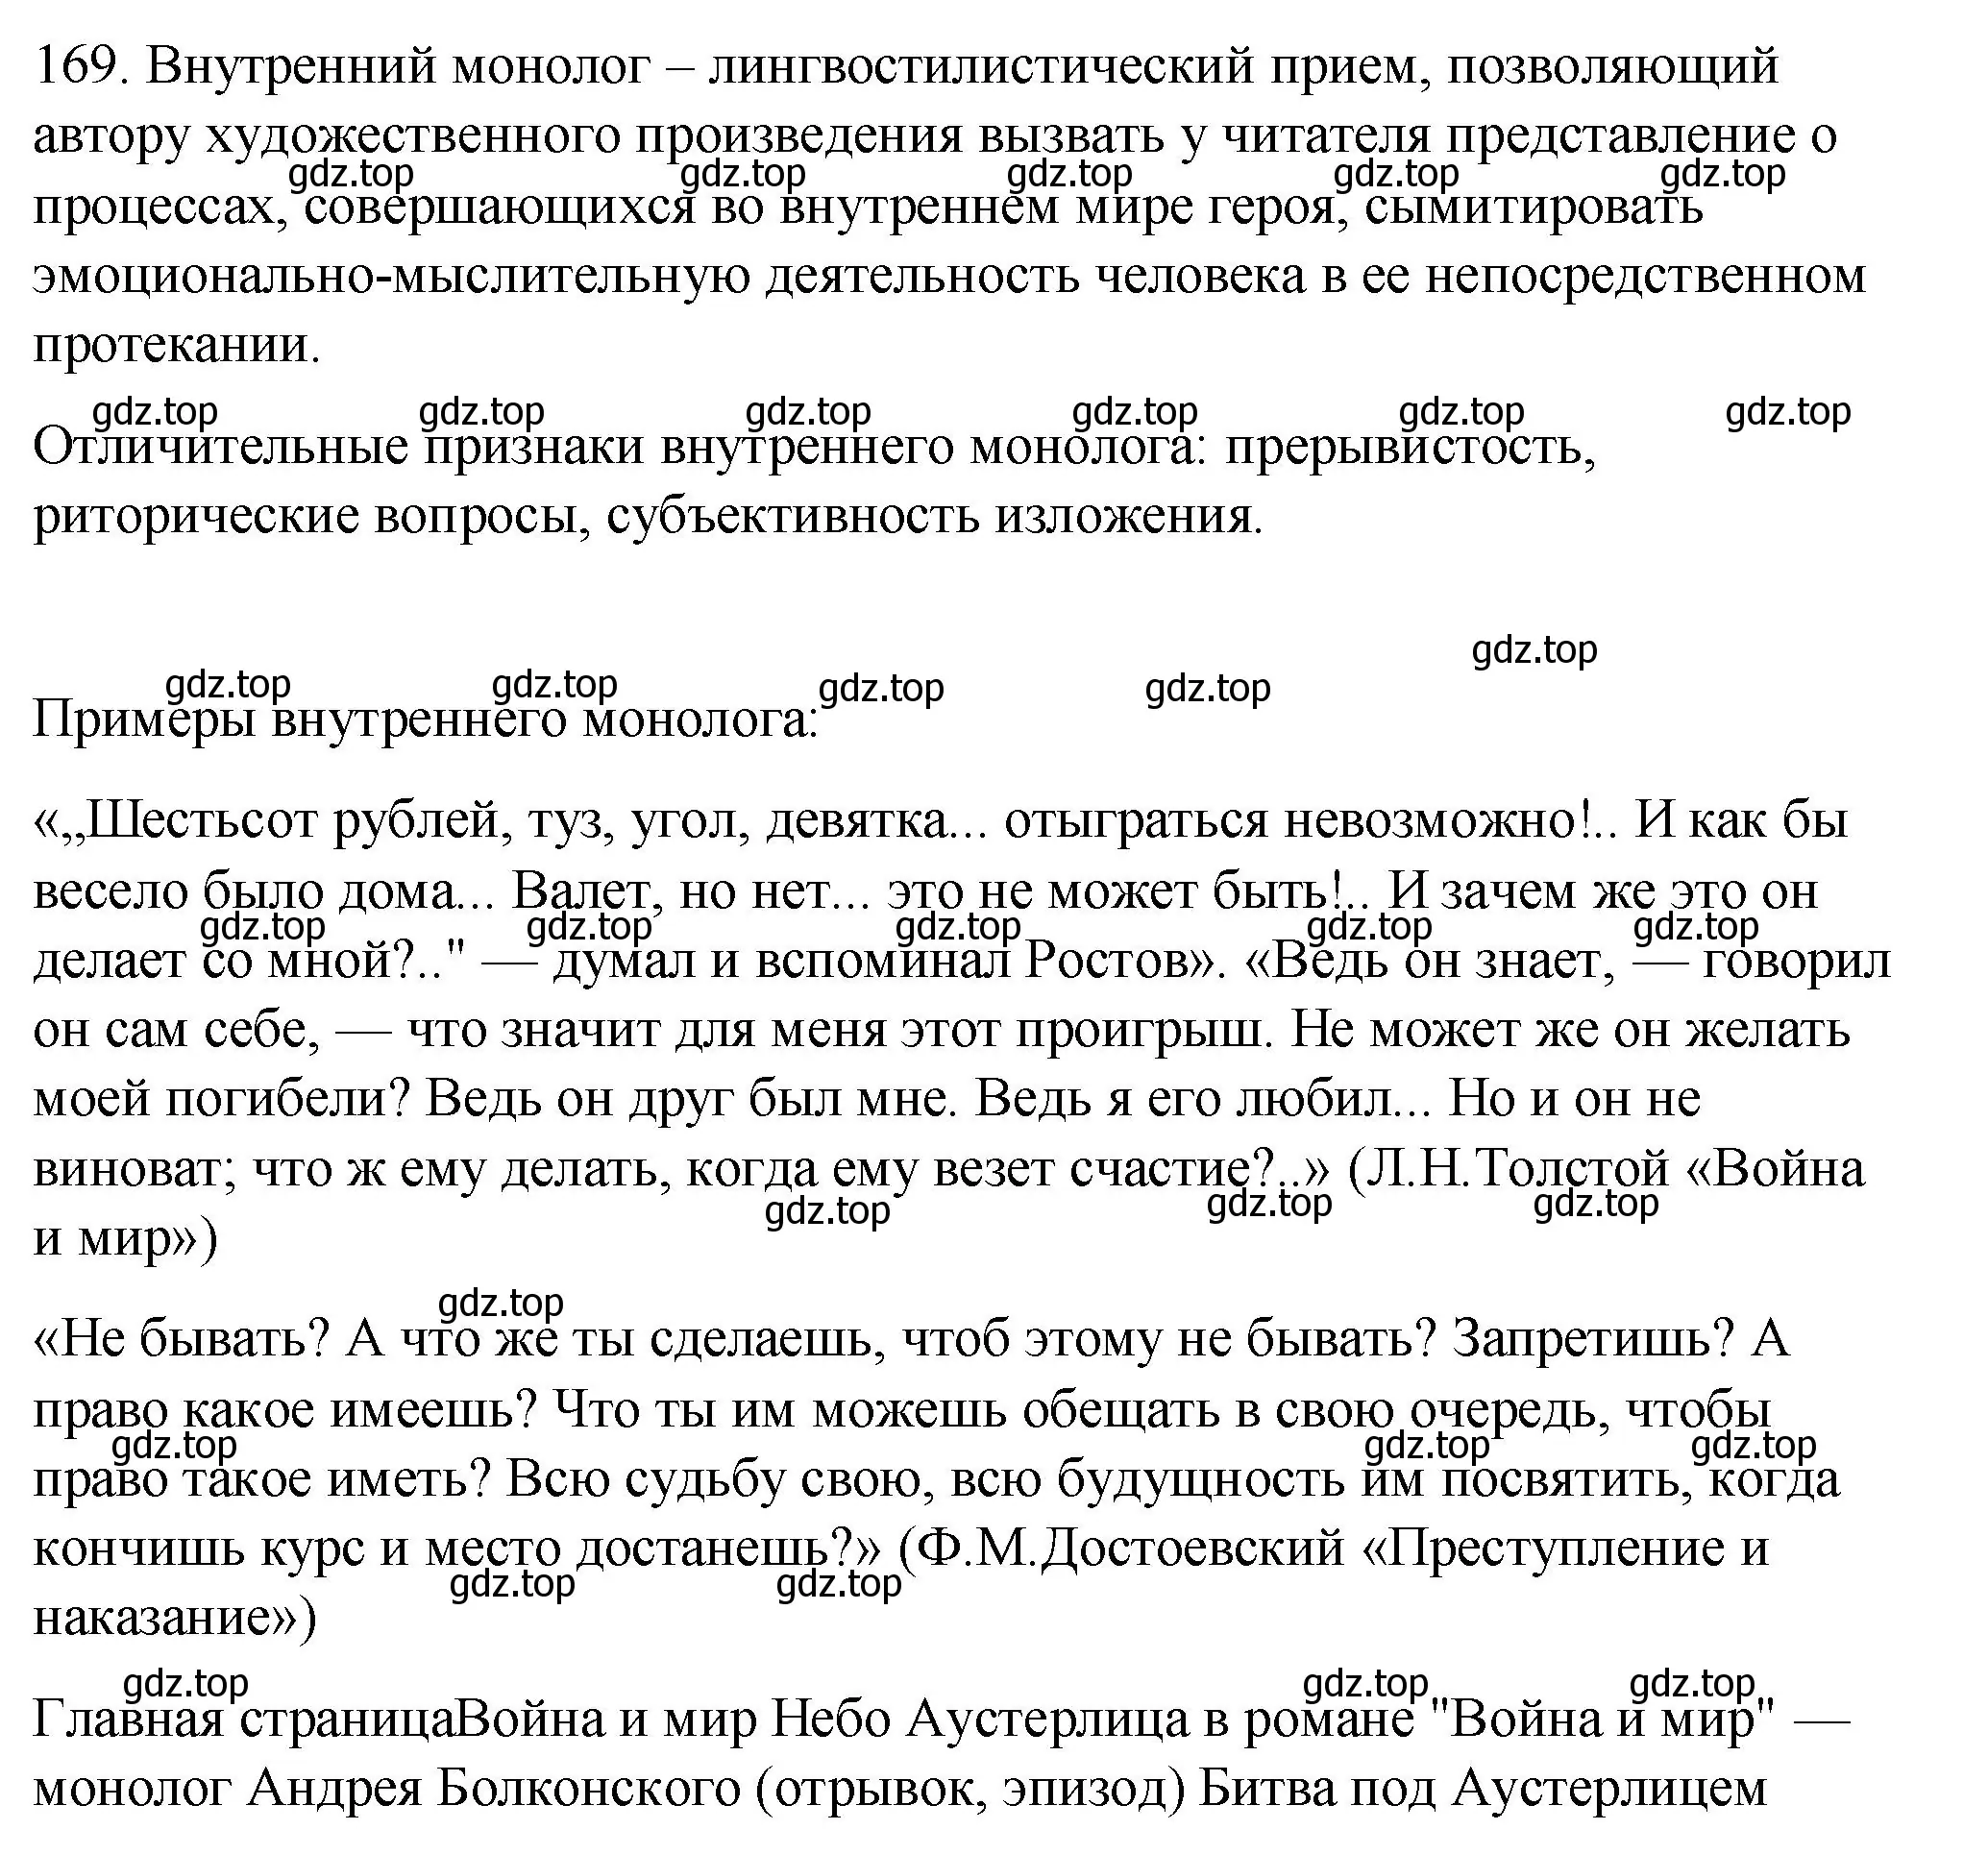 Решение номер 169 (страница 236) гдз по русскому языку 10-11 класс Гольцова, Шамшин, учебник 2 часть